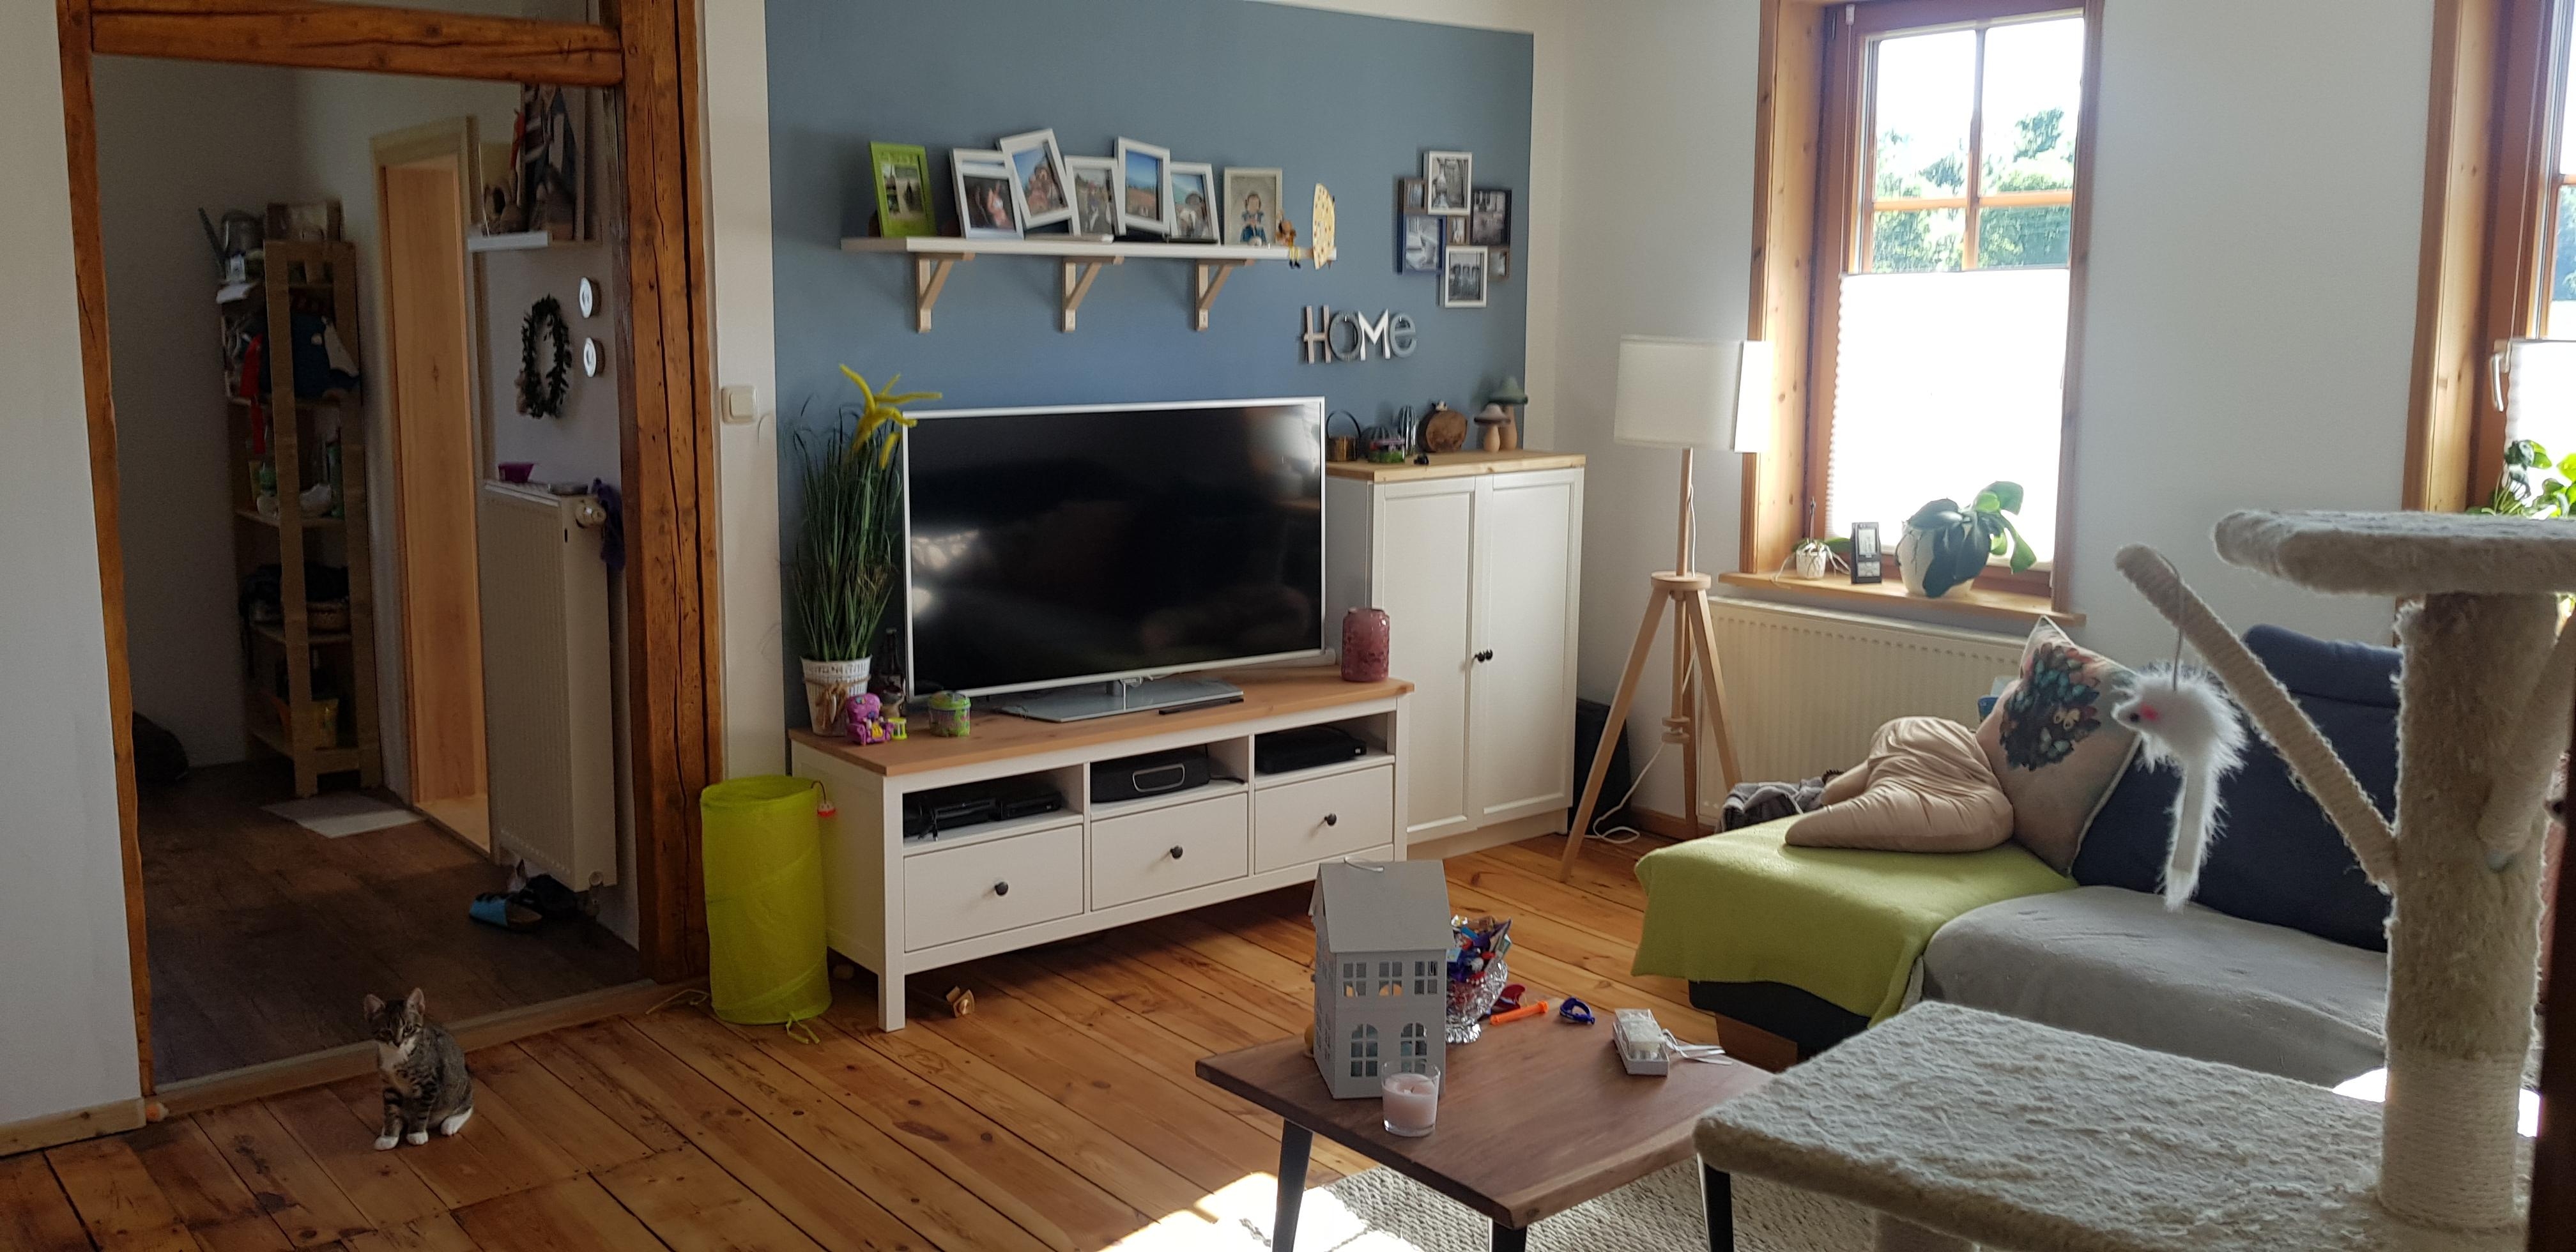 Zu Hause im Glück #Wohnzimmer #Ikeahack #Lieblingsblau #Holzdiele #Miau